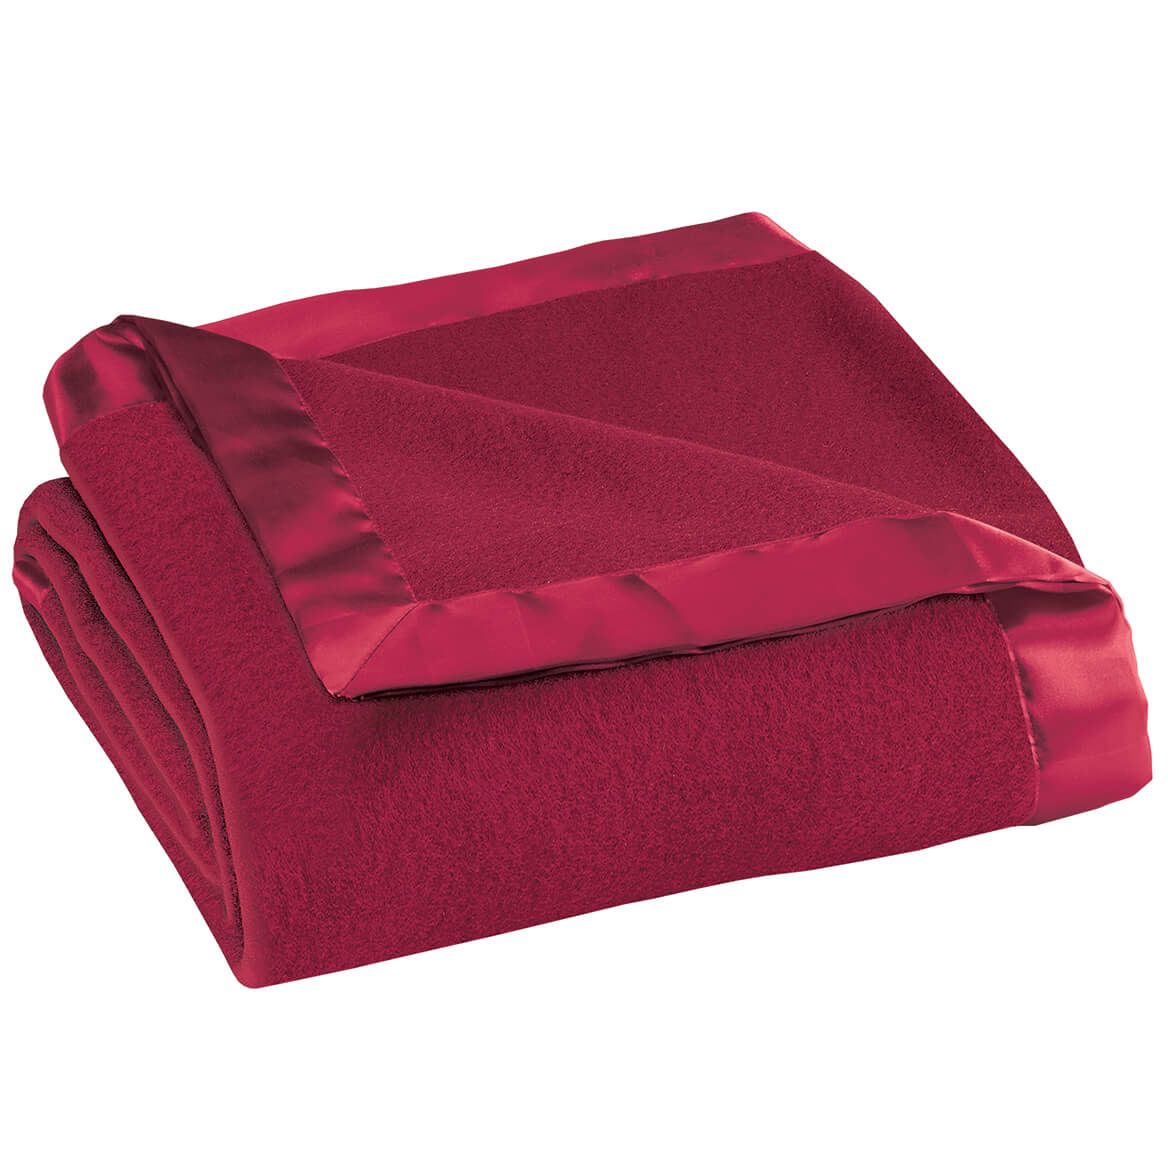 Satin Fleece Blanket by OakRidge™ + '-' + 345224